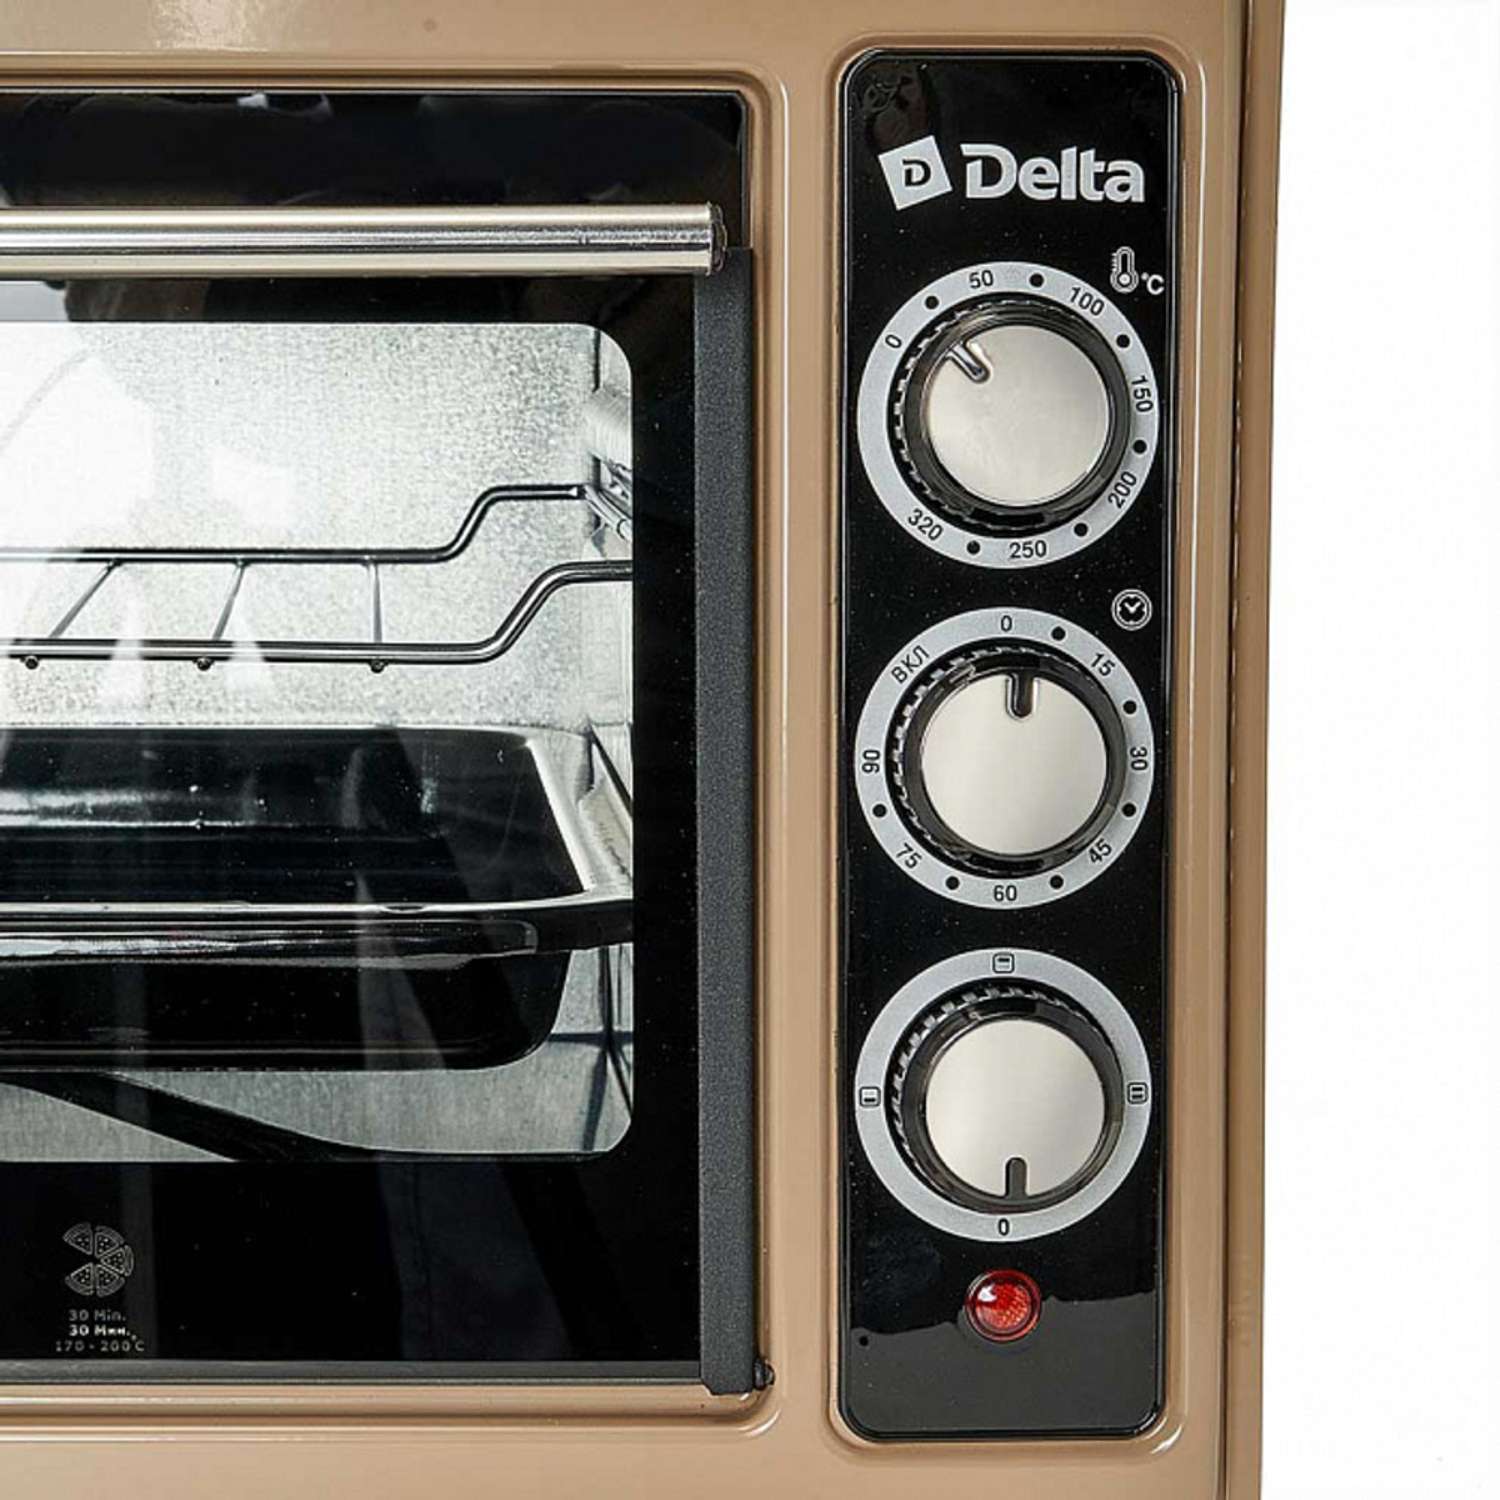 Мини-печь Delta D-0123 бежевая 1300 Вт 37 л 2 нагревательных элемента 1 противень решетка таймер - фото 2